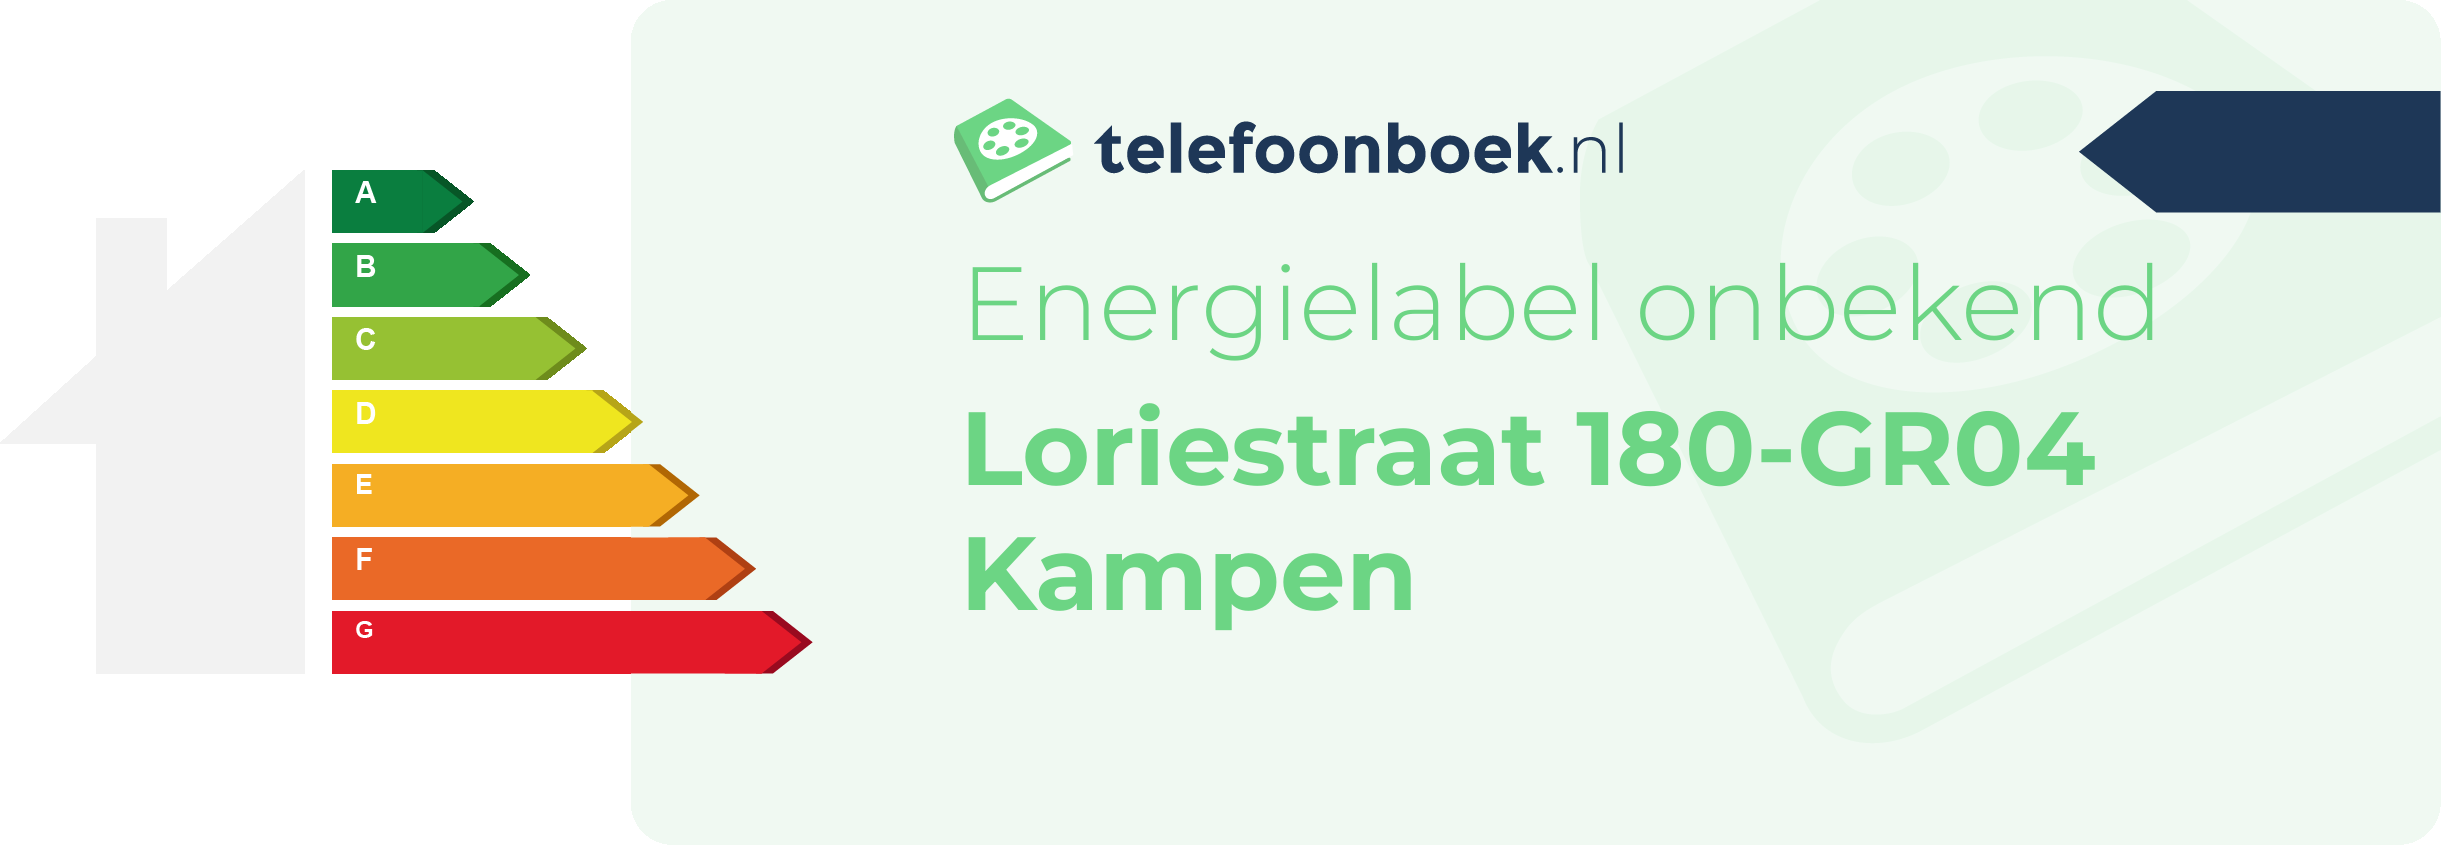 Energielabel Loriestraat 180-GR04 Kampen